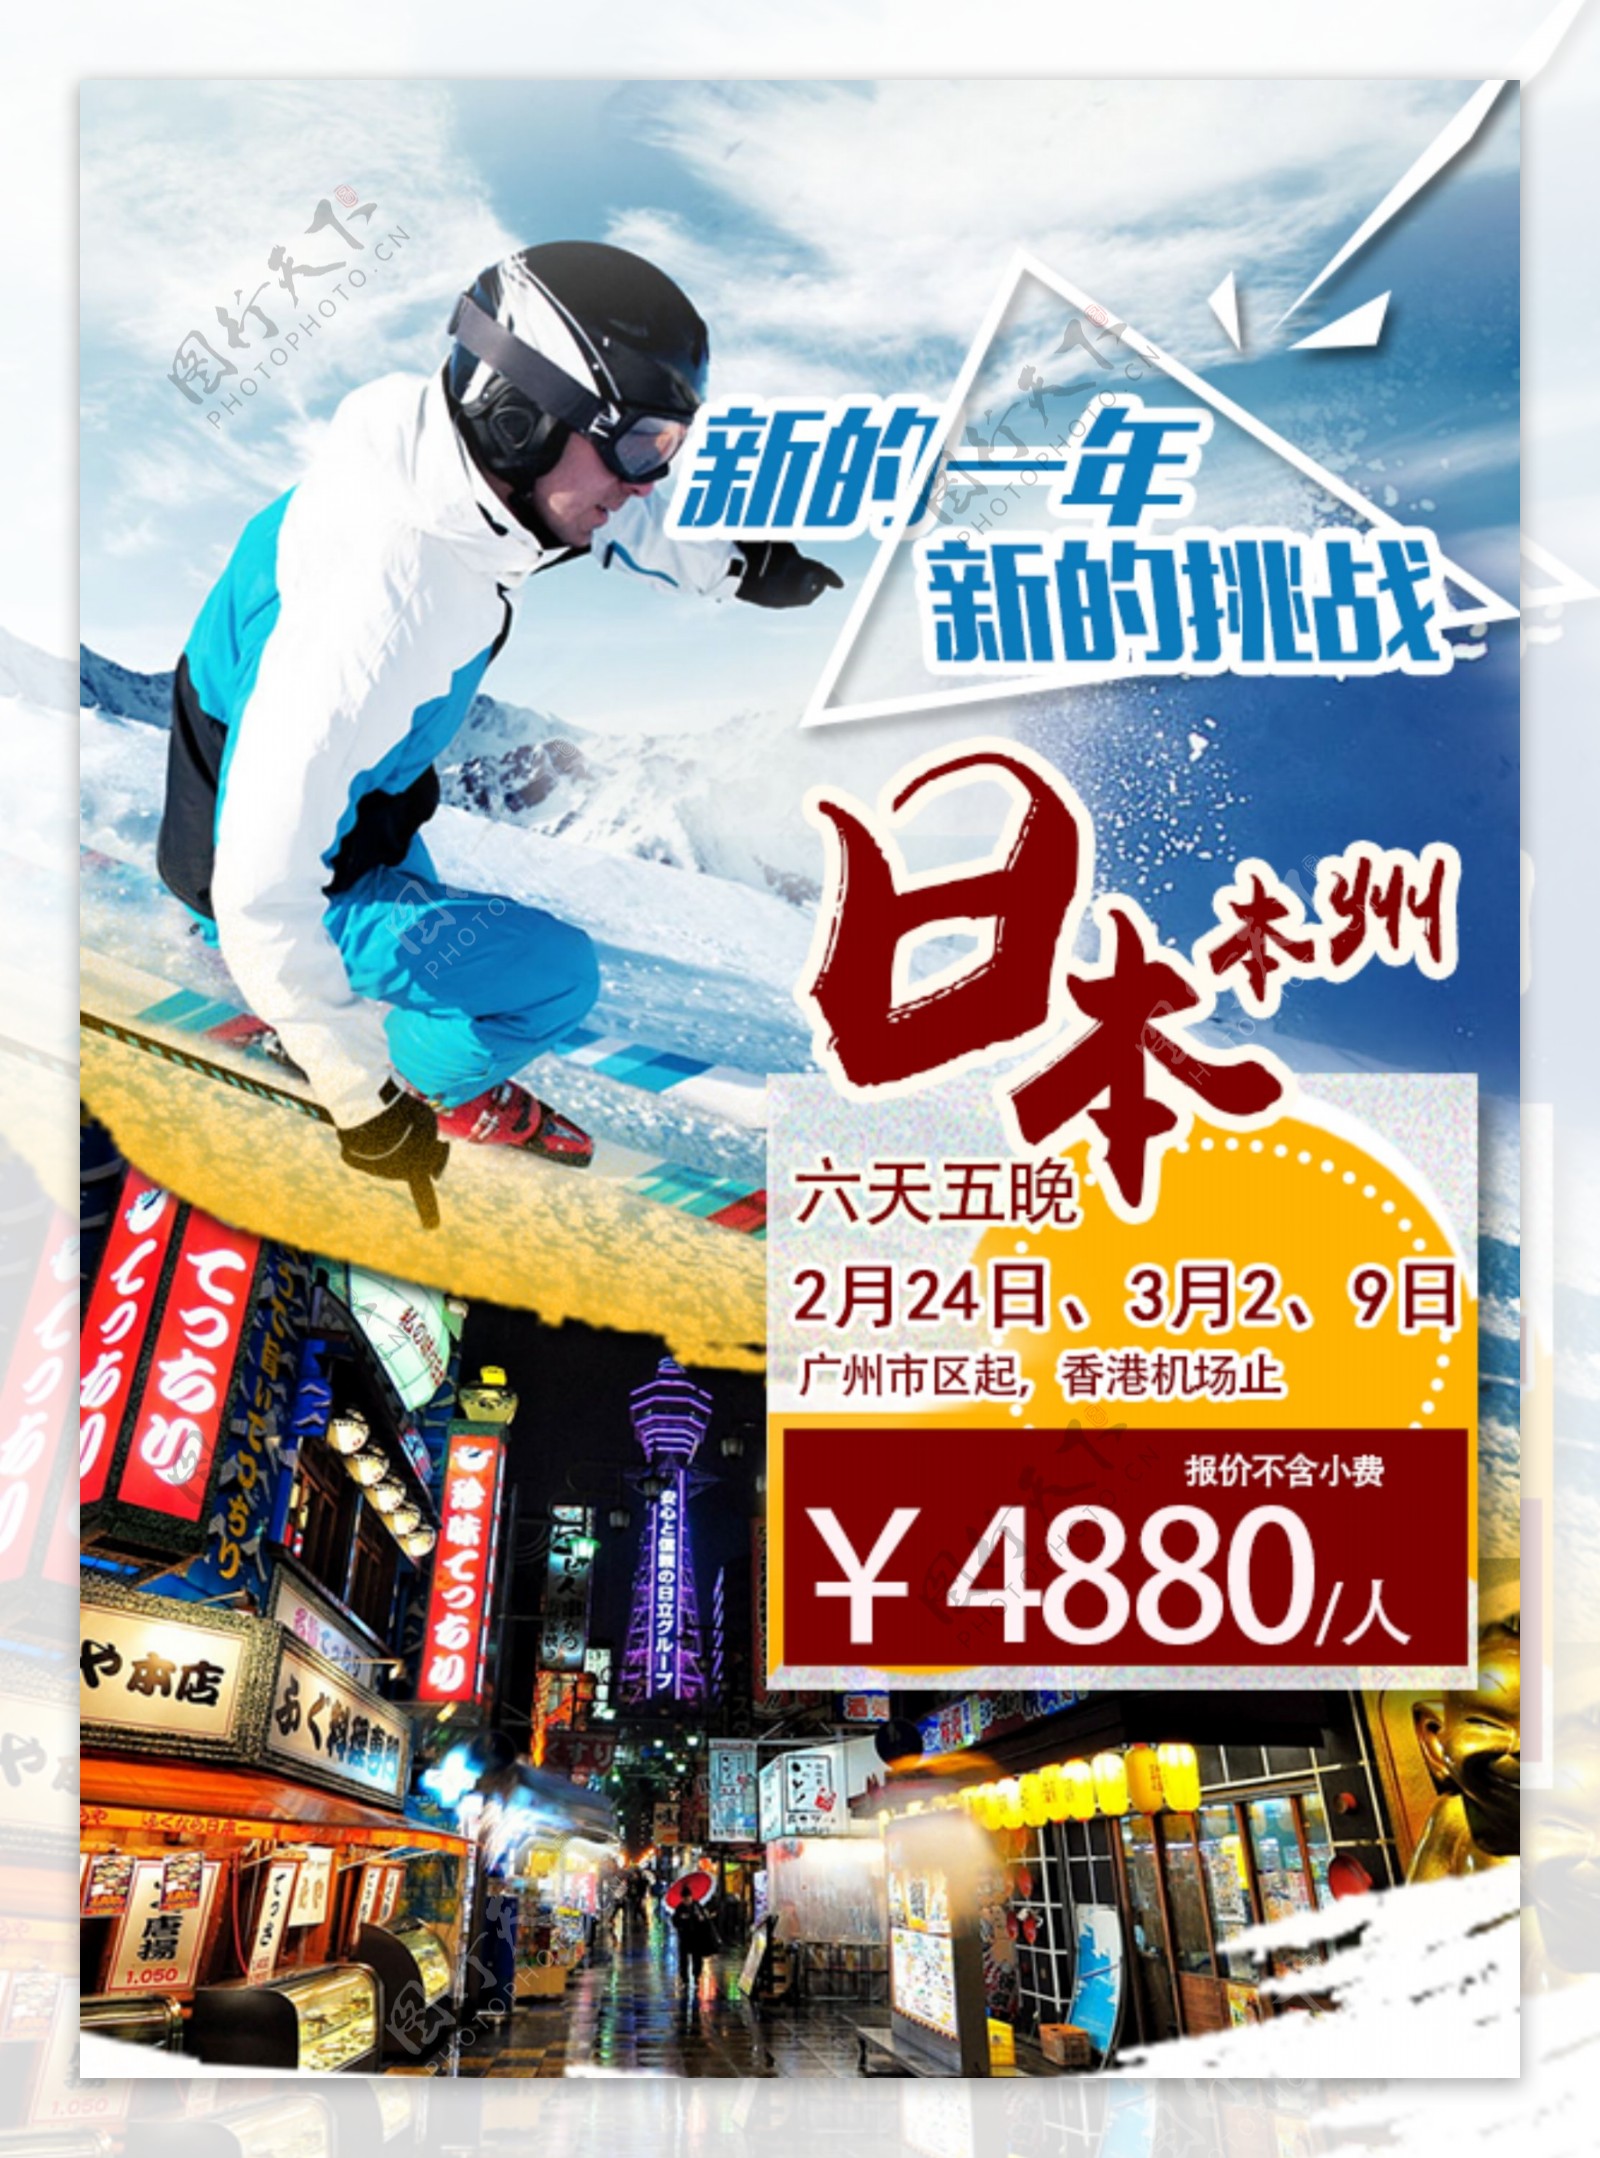 日本旅游滑雪主题促销海报psd